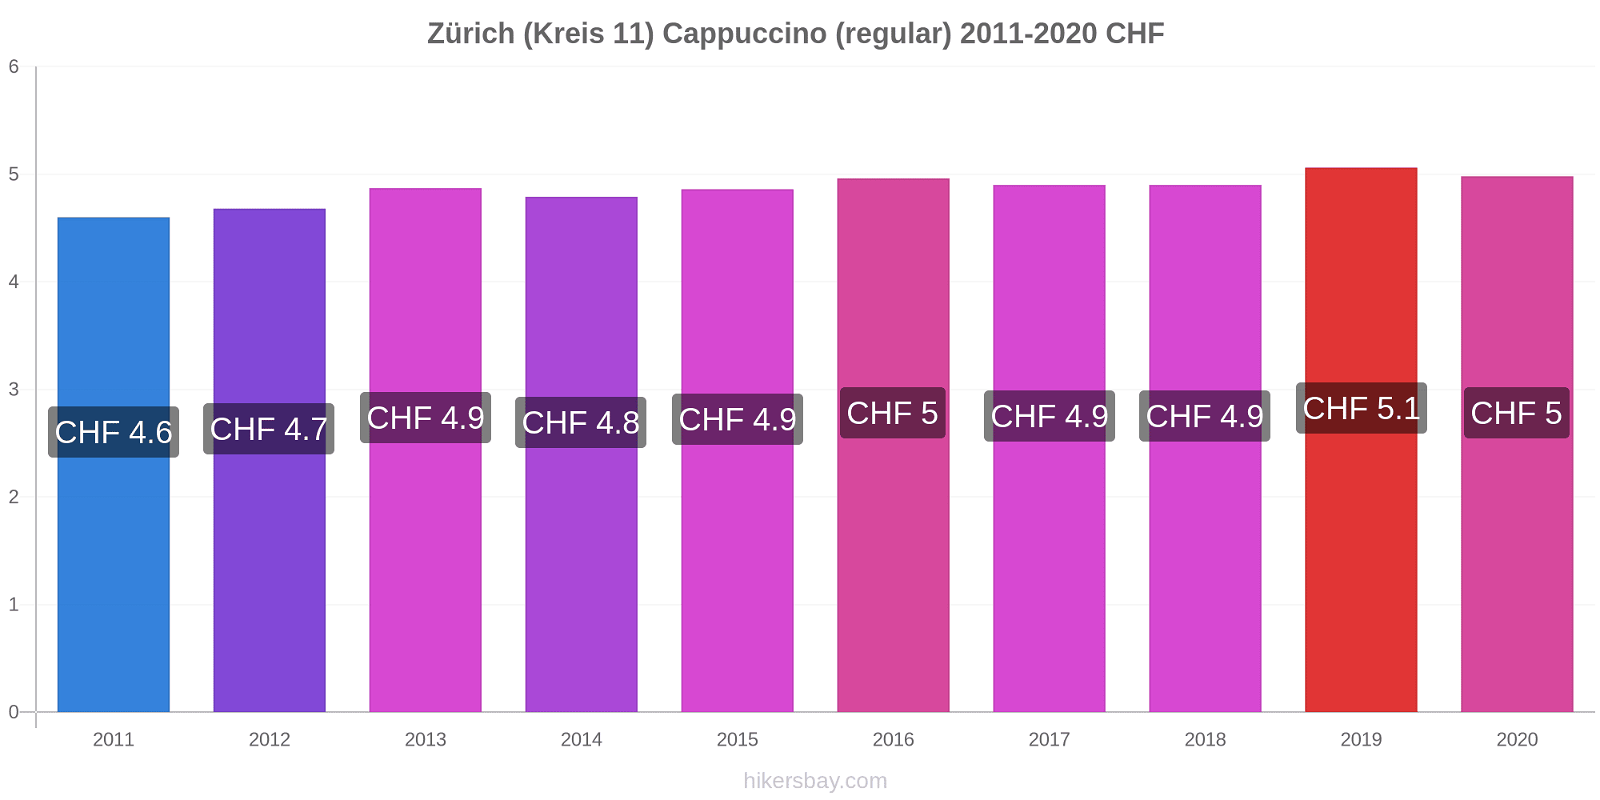 Zürich (Kreis 11) variação de preço Capuccino (regular) hikersbay.com